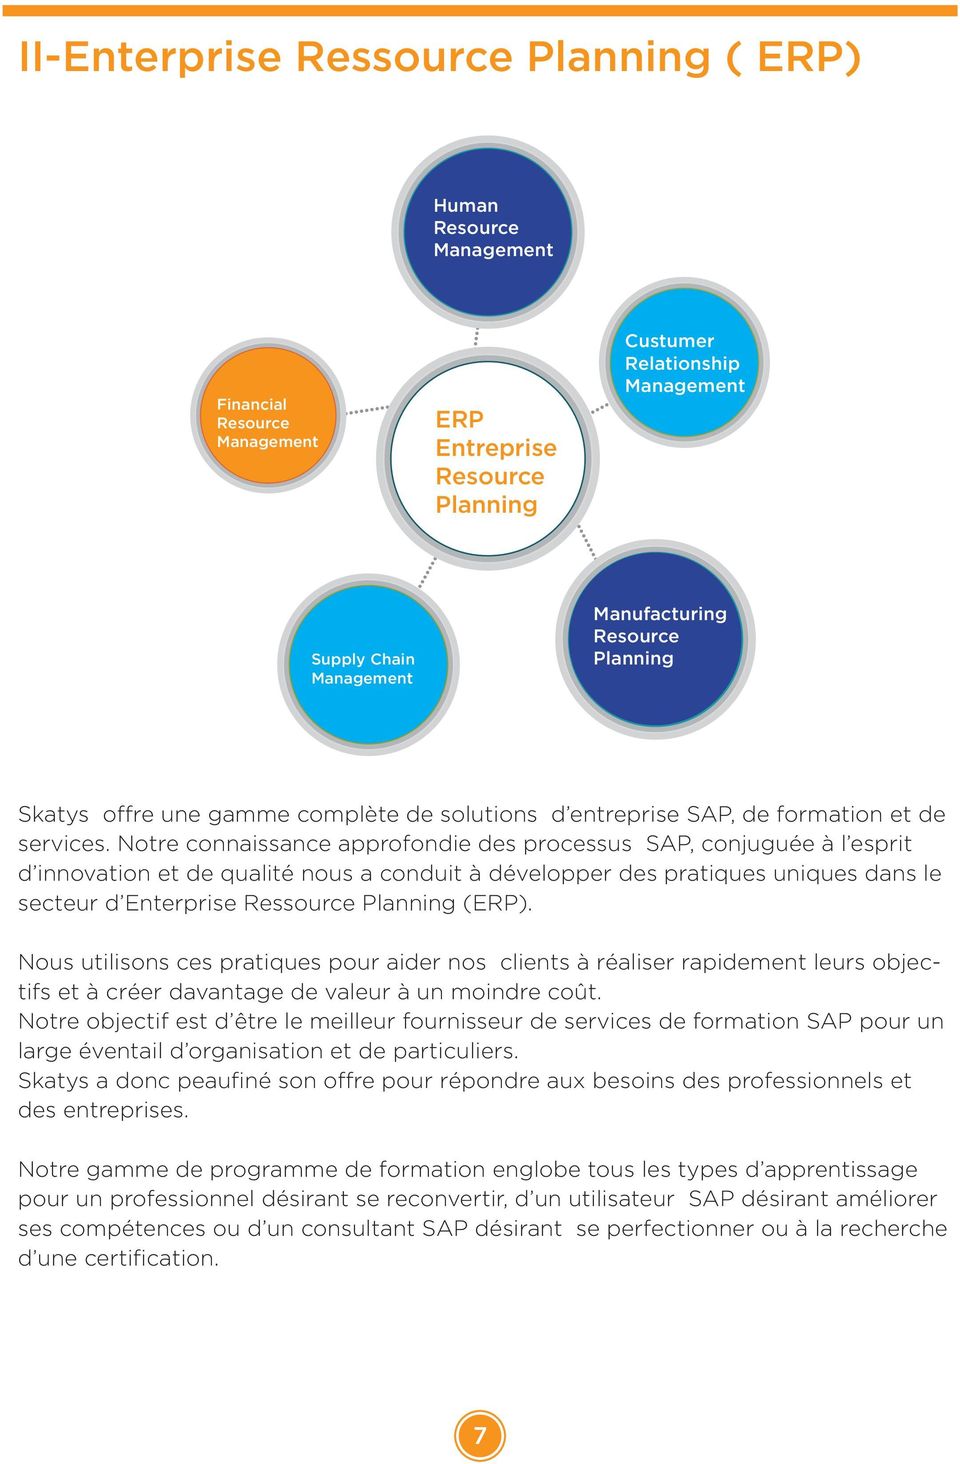 Notre connaissance approfondie des processus SAP, conjuguée à l esprit d innovation et de qualité nous a conduit à développer des pratiques uniques dans le secteur d Enterprise Ressource Planning